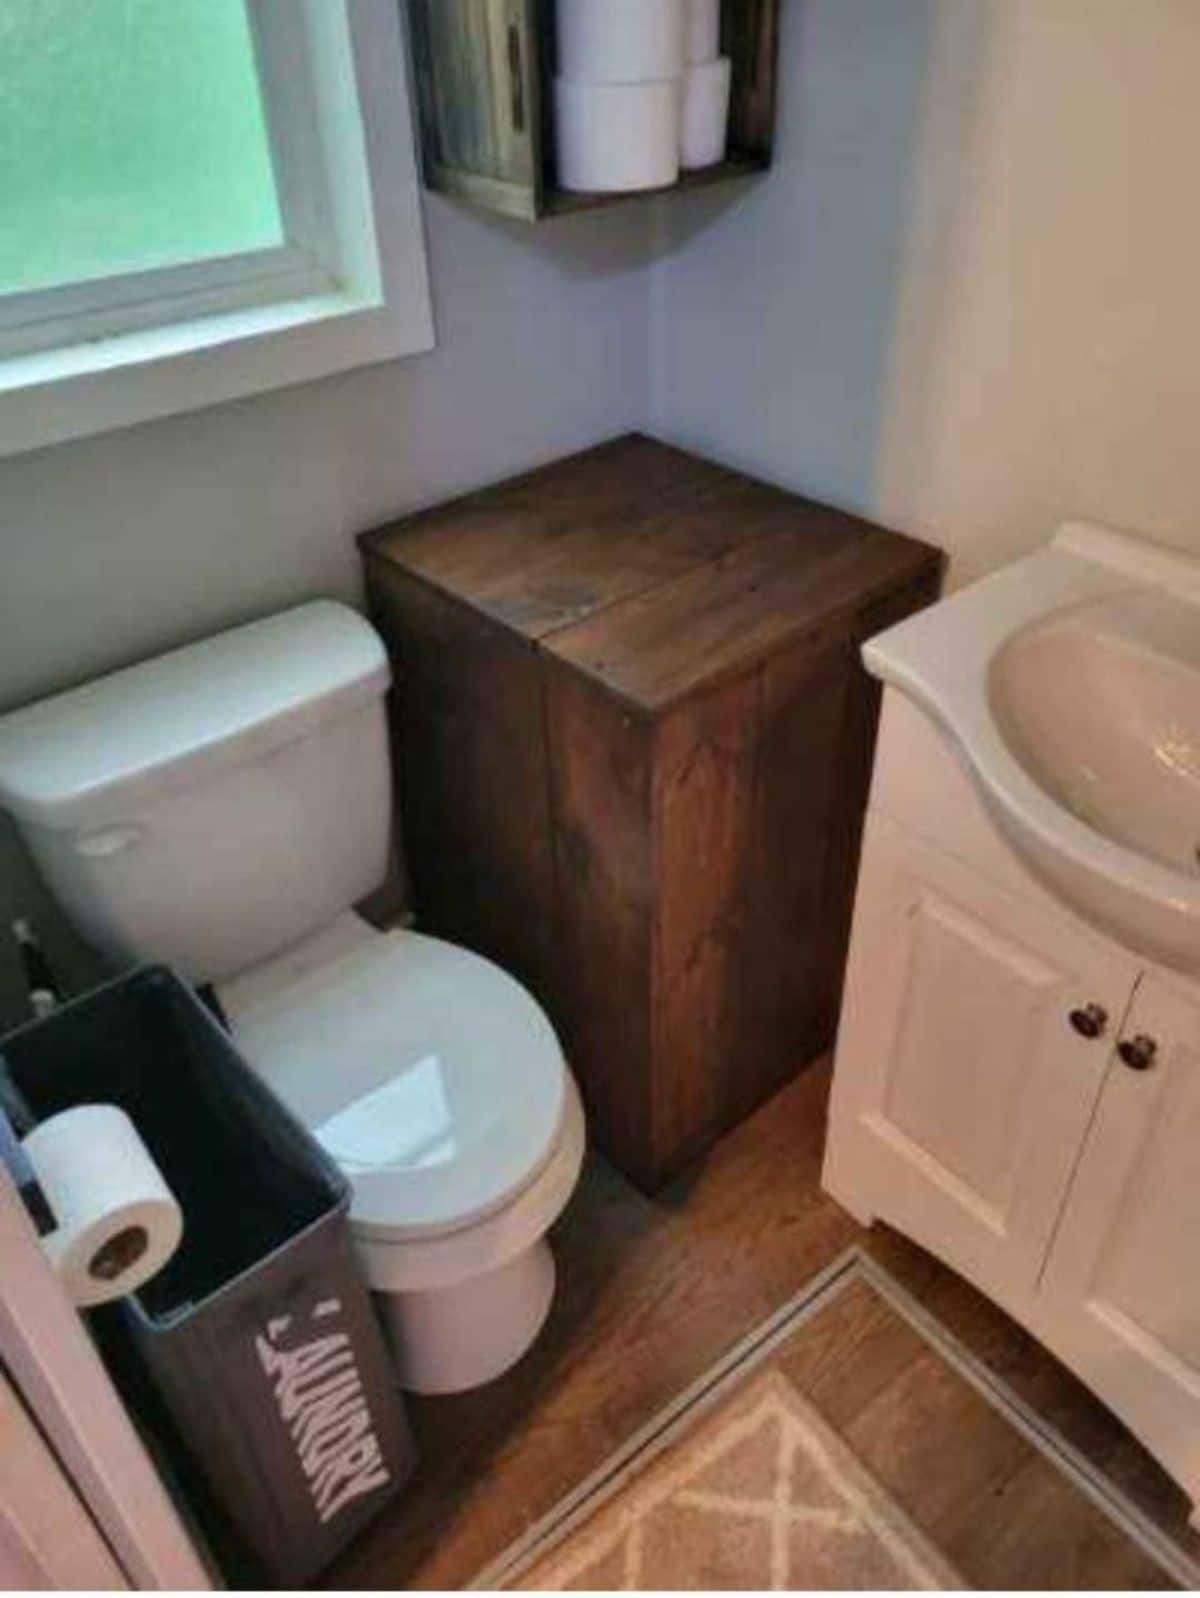 Standard toilet and sink with vanity plus storage in bathroom